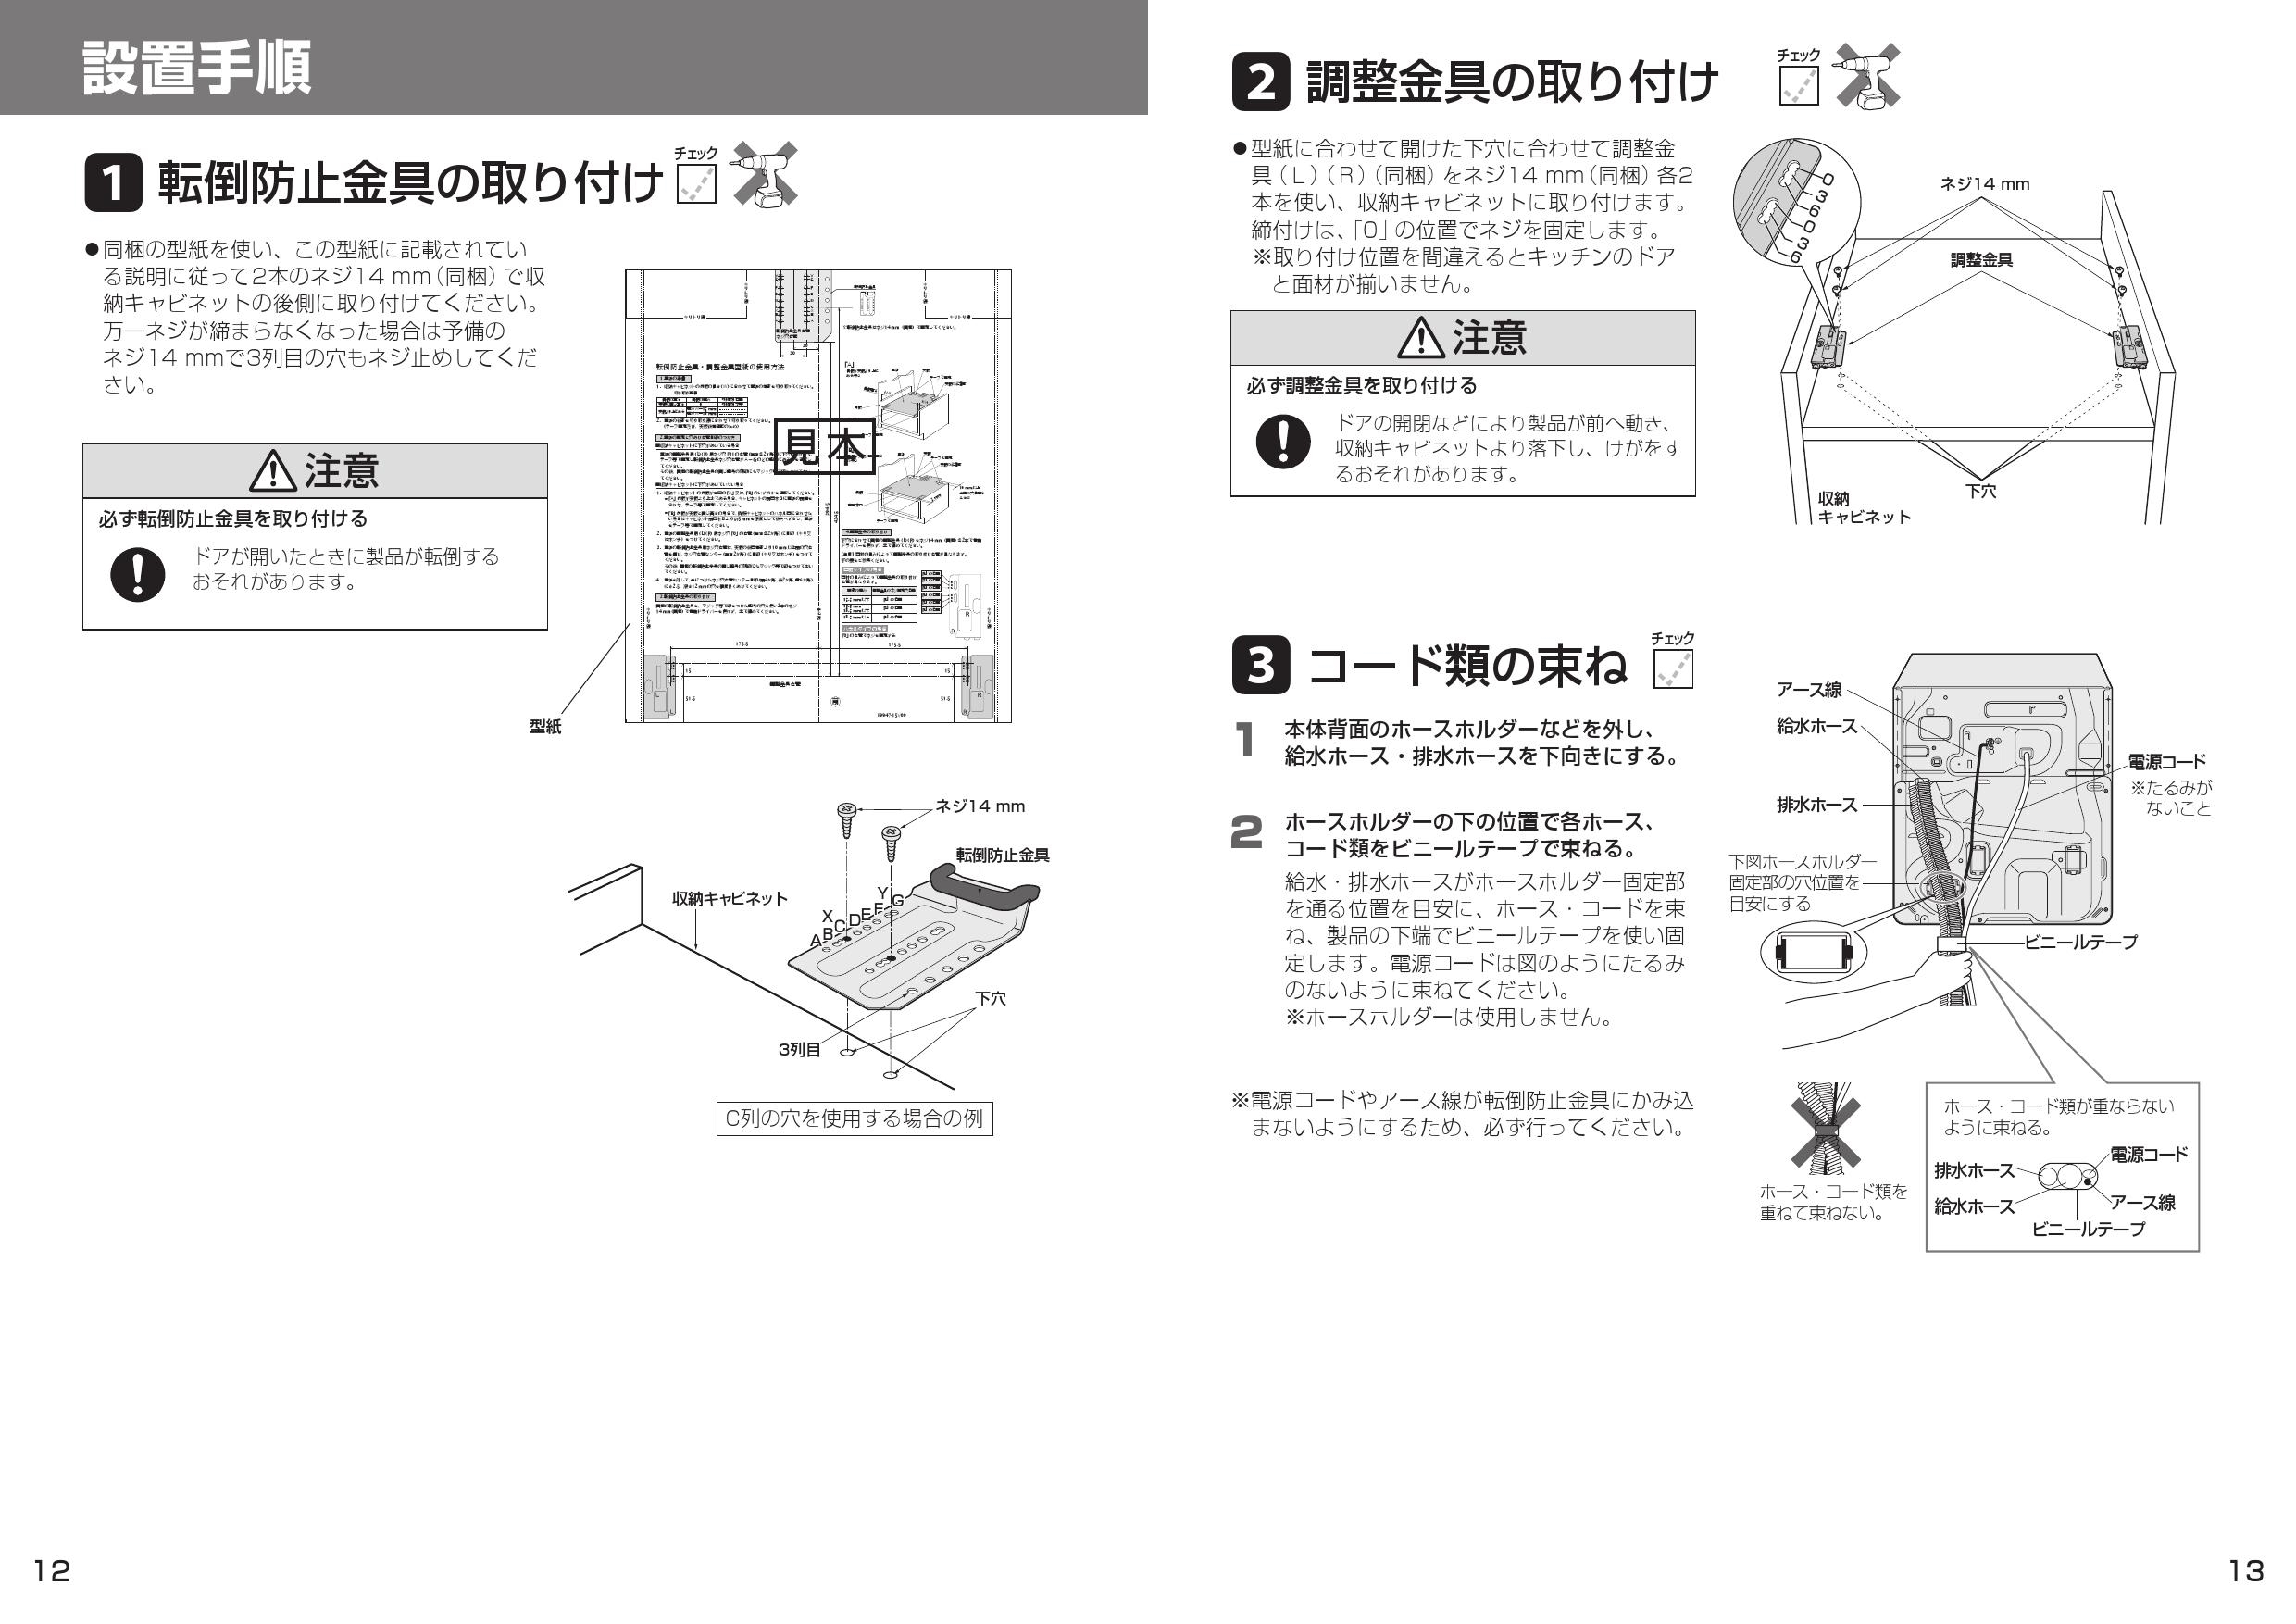 日本正規代理店品 NP-45KS9W Panasonic パナソニック K9シリーズ ビルトイン食器洗い乾燥機 ドアフル面材型 ミドルタイプ  fucoa.cl